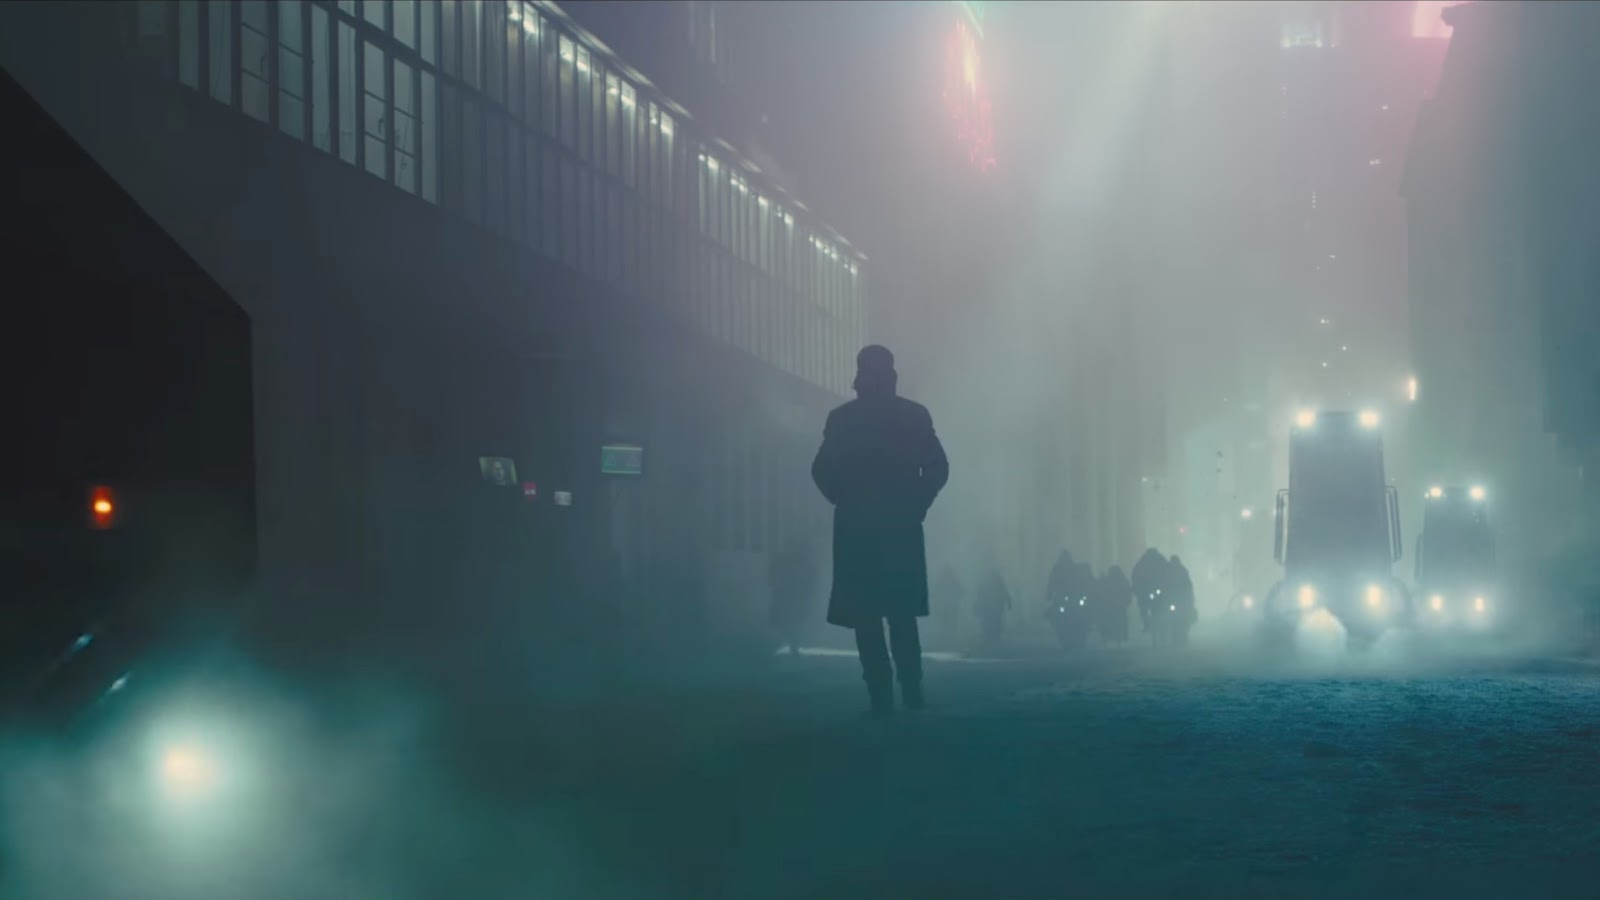 phim blade runner 2049 elle man 7 Review phim Blade Runner 2049: Điều gì khiến con người thực sự là con người? | ELLE Man Việt Nam